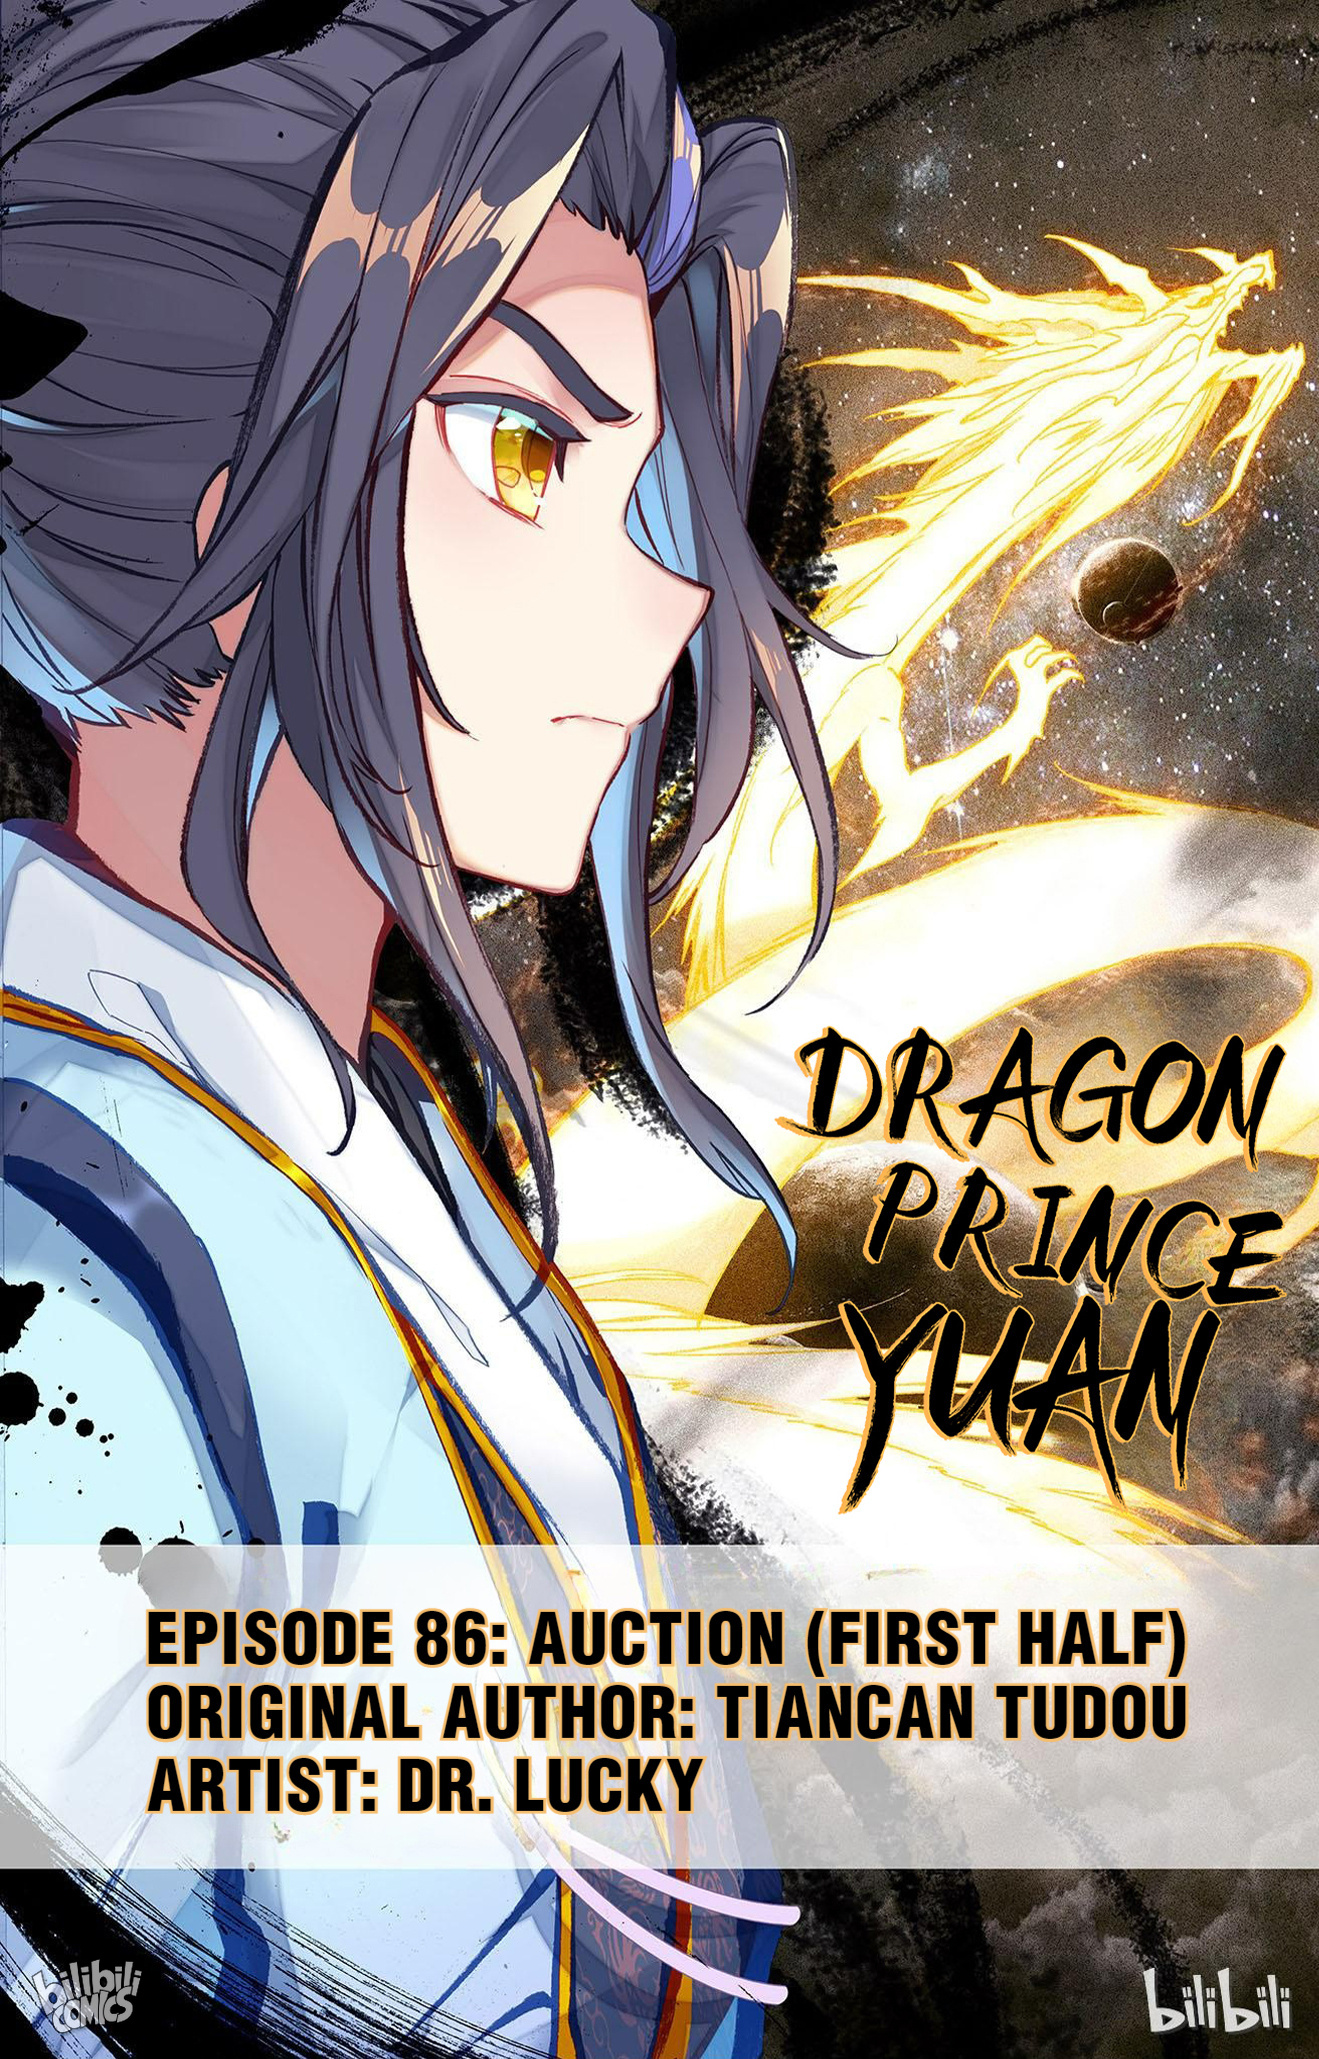 Dragon Prince Yuan - Page 1